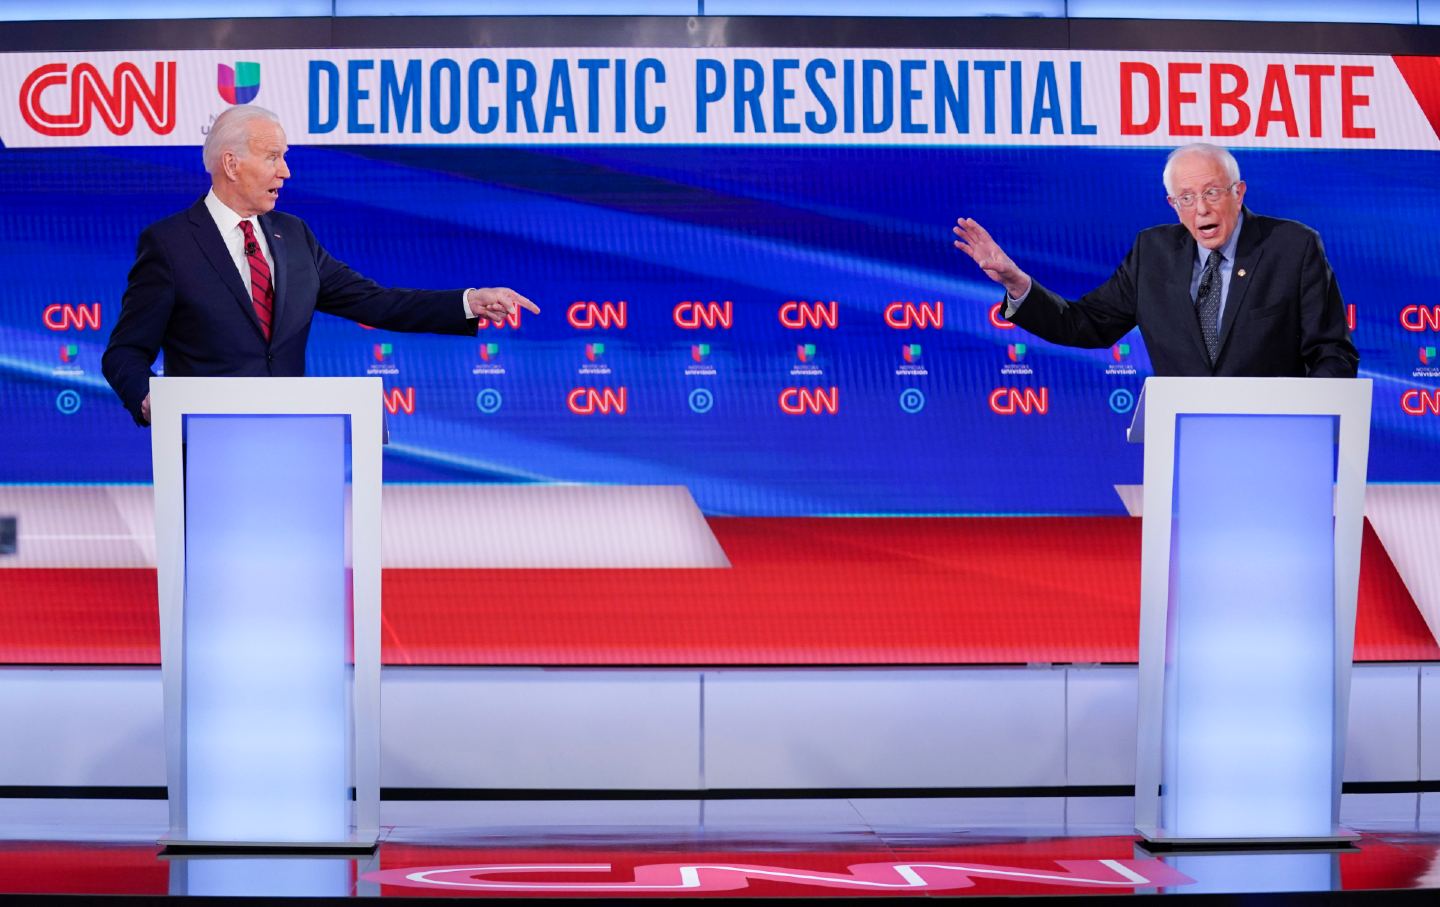 Biden and Sanders debate